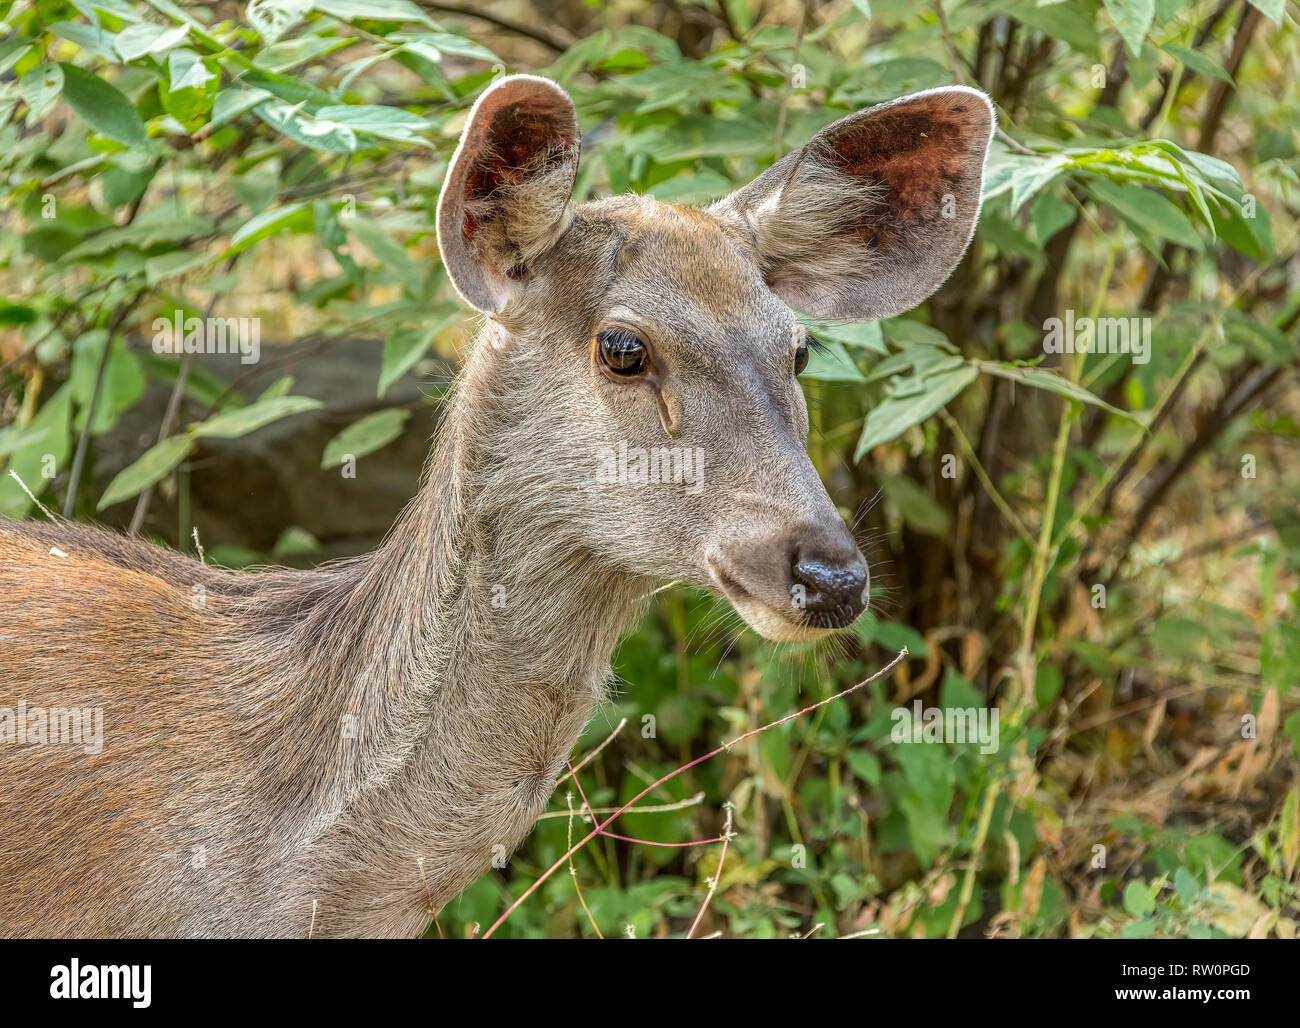 El Sambar es un ciervo grande nativas al subcontinente de la India, el sur de China y el sudeste de Asia que está clasificada como Vulnerable en la Lista Roja de la UICN el pecado Foto de stock